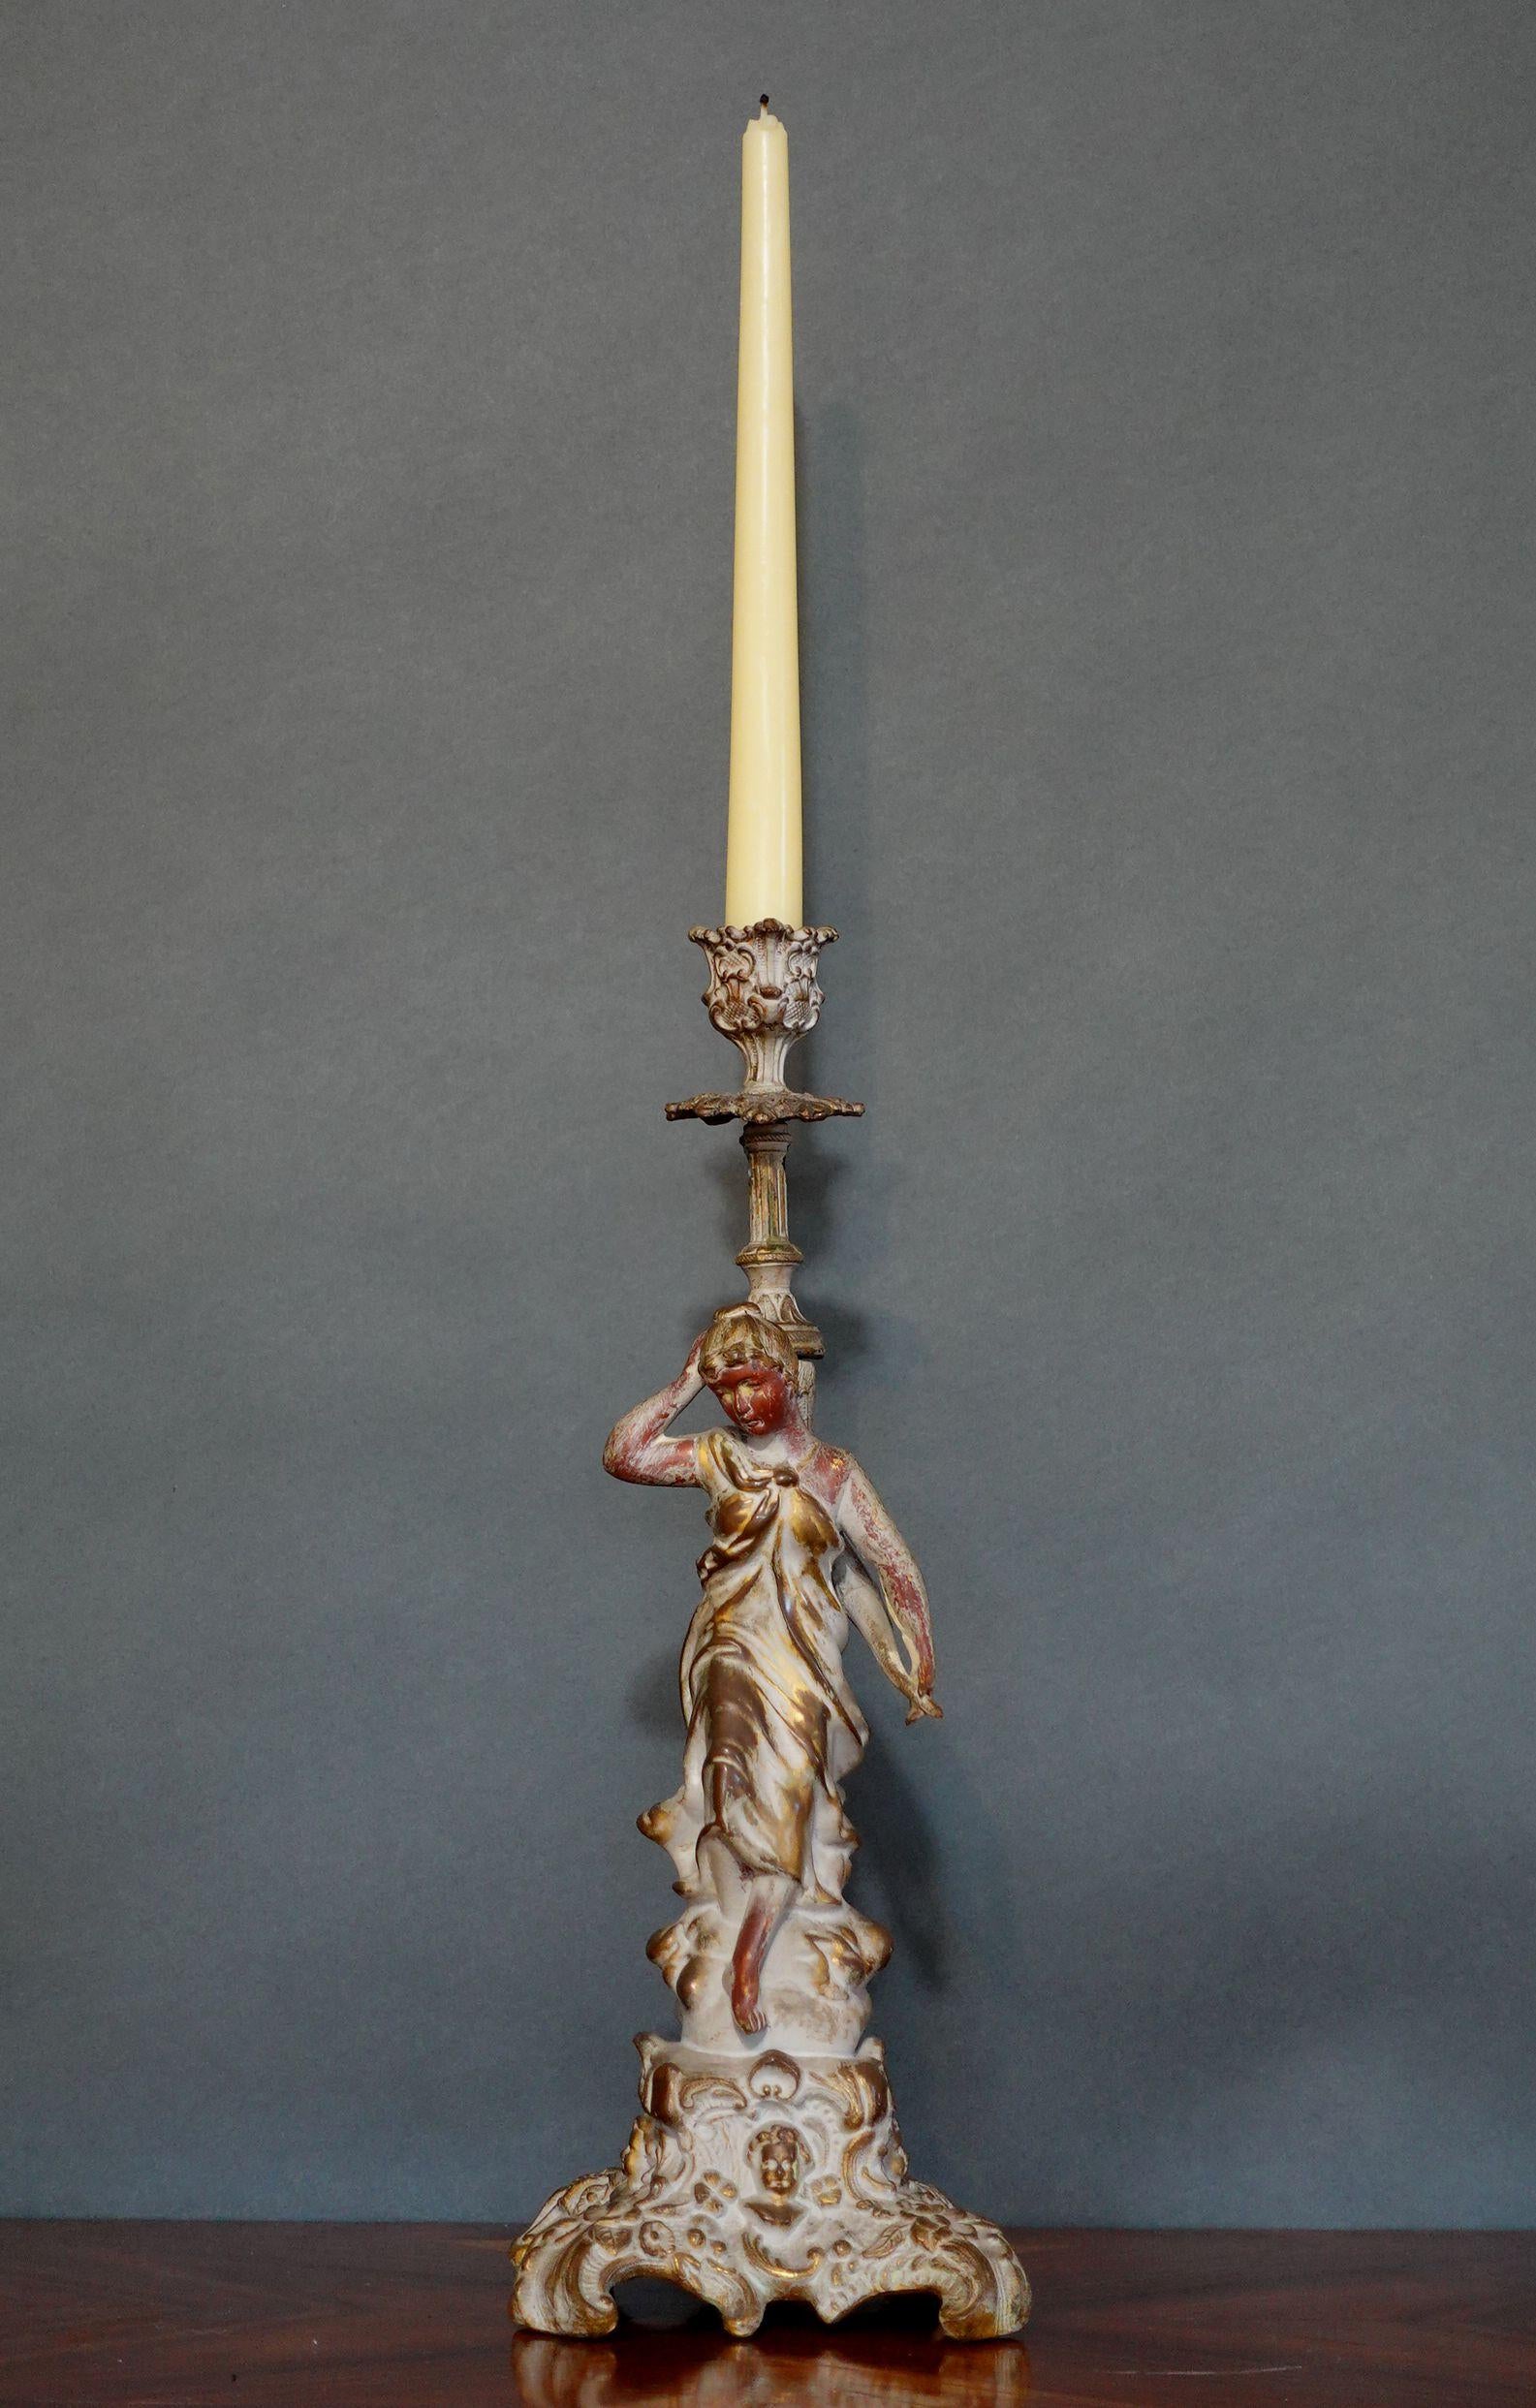 19. Jh. Französischer patinierter Bronzeskulpturen-Kerzenleuchter mit traditioneller französischer Skulptur, unten vergoldet.

    